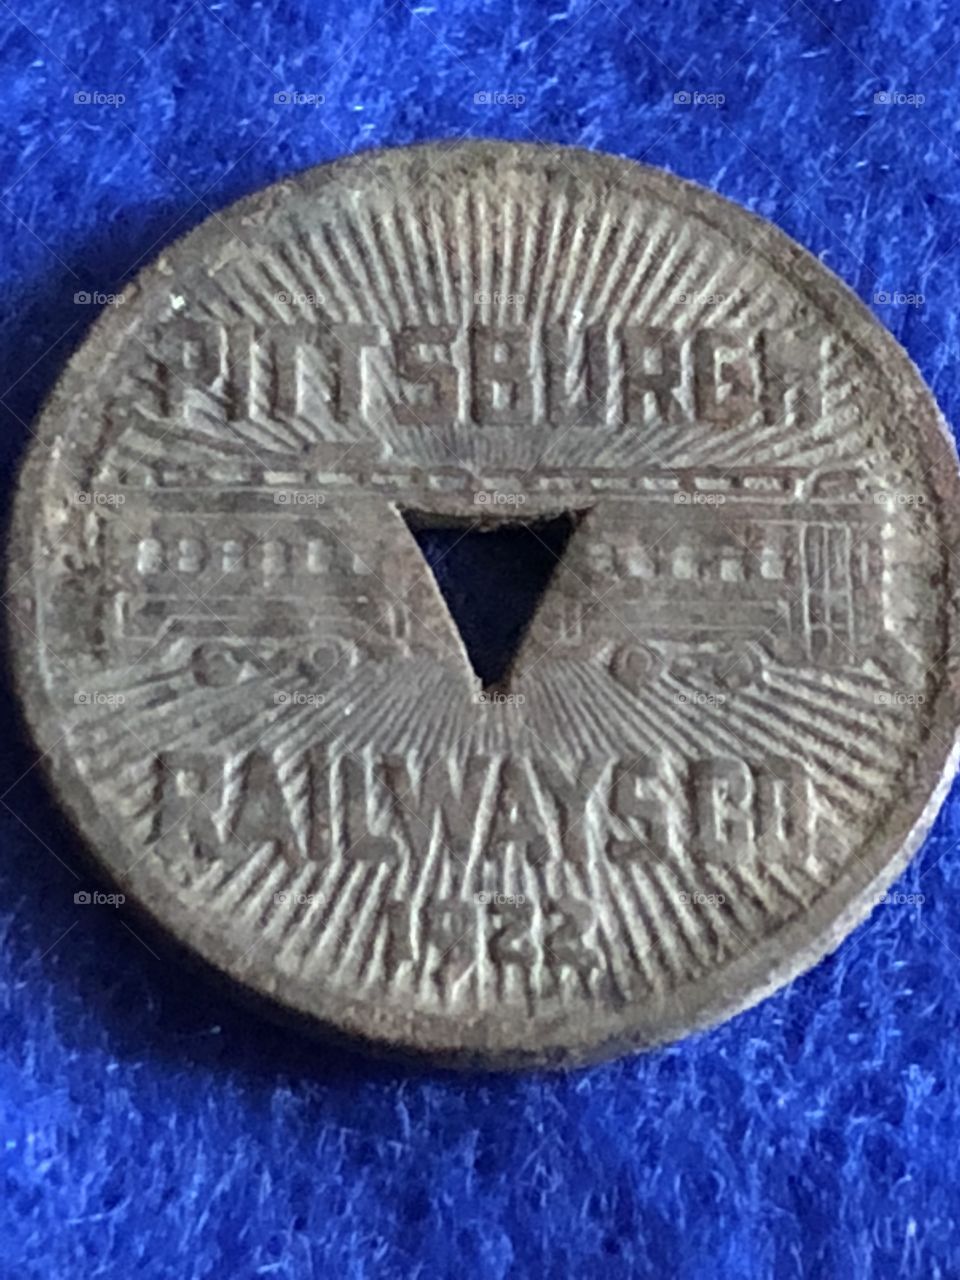 1922 Pittsburgh railways token